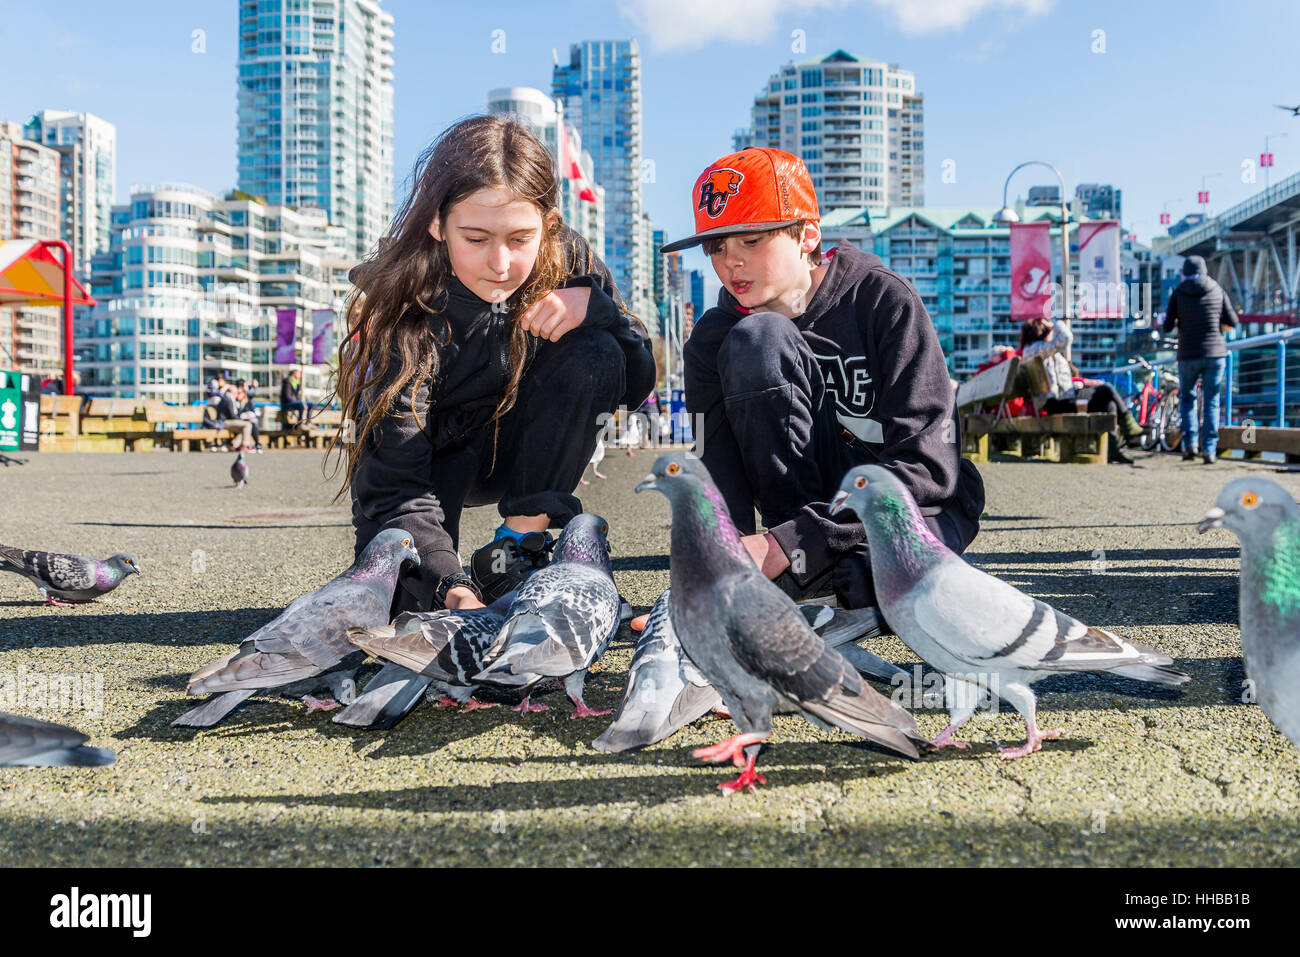 Junge Burschen, die Verfütterung von Getreide an Tauben, außen Granville Island Public Market, Vancouver, Britisch-Kolumbien, Kanada Stockfoto